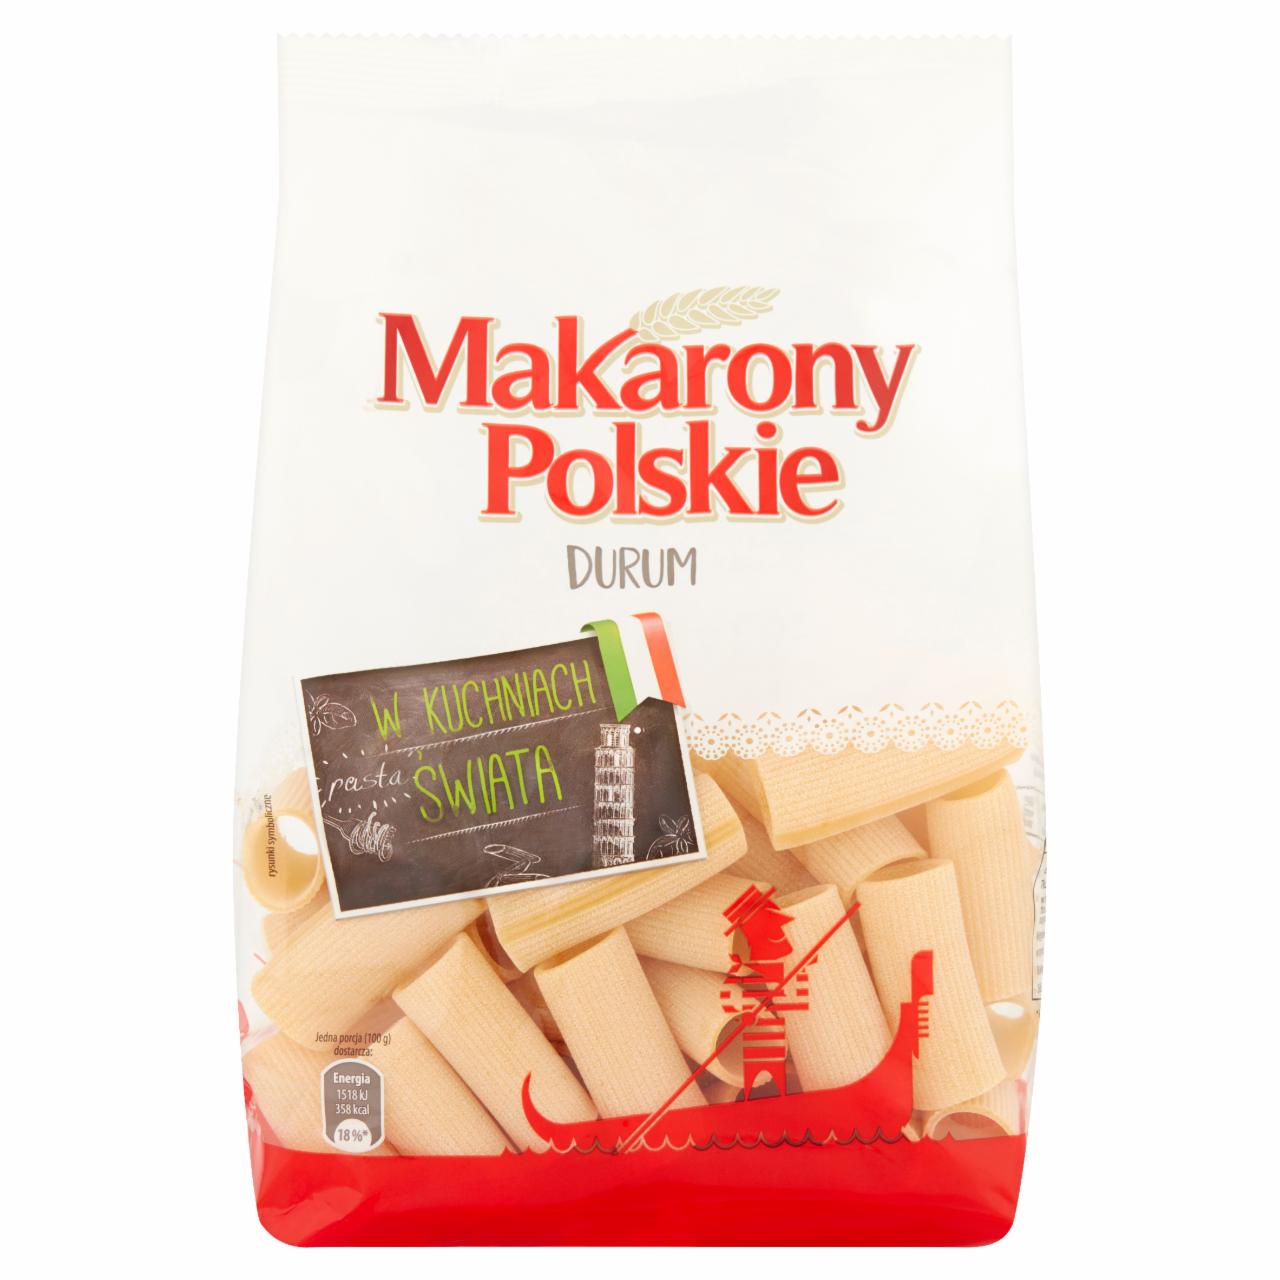 Zdjęcia - Makarony Polskie Makaron durum duże rurki 400 g